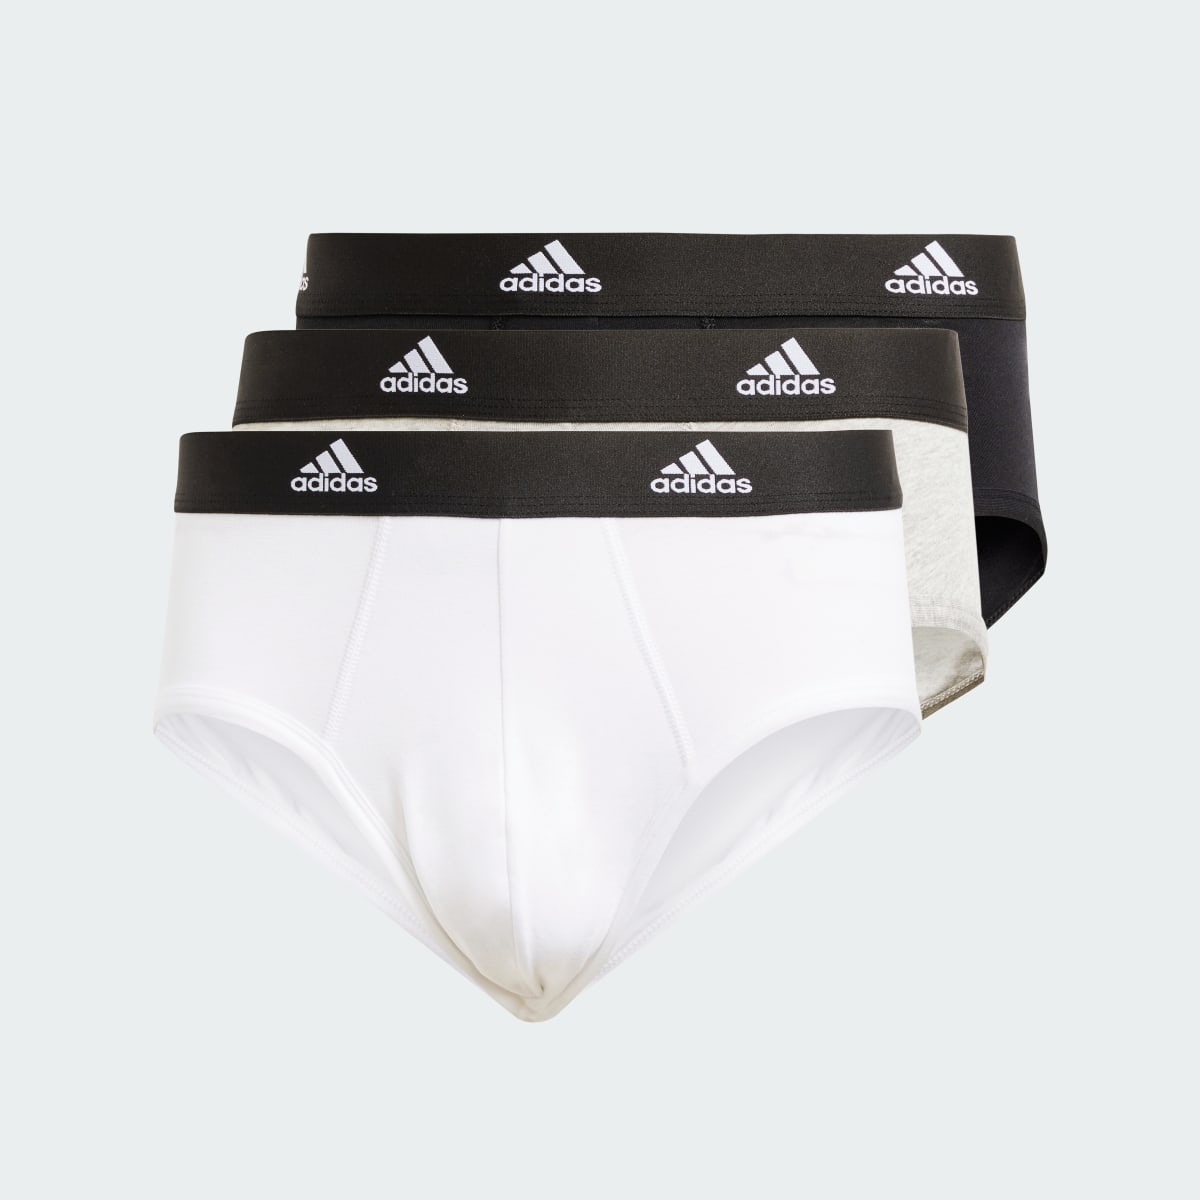 Adidas Active Flex Cotton Brief Underwear 3 Pack. 7